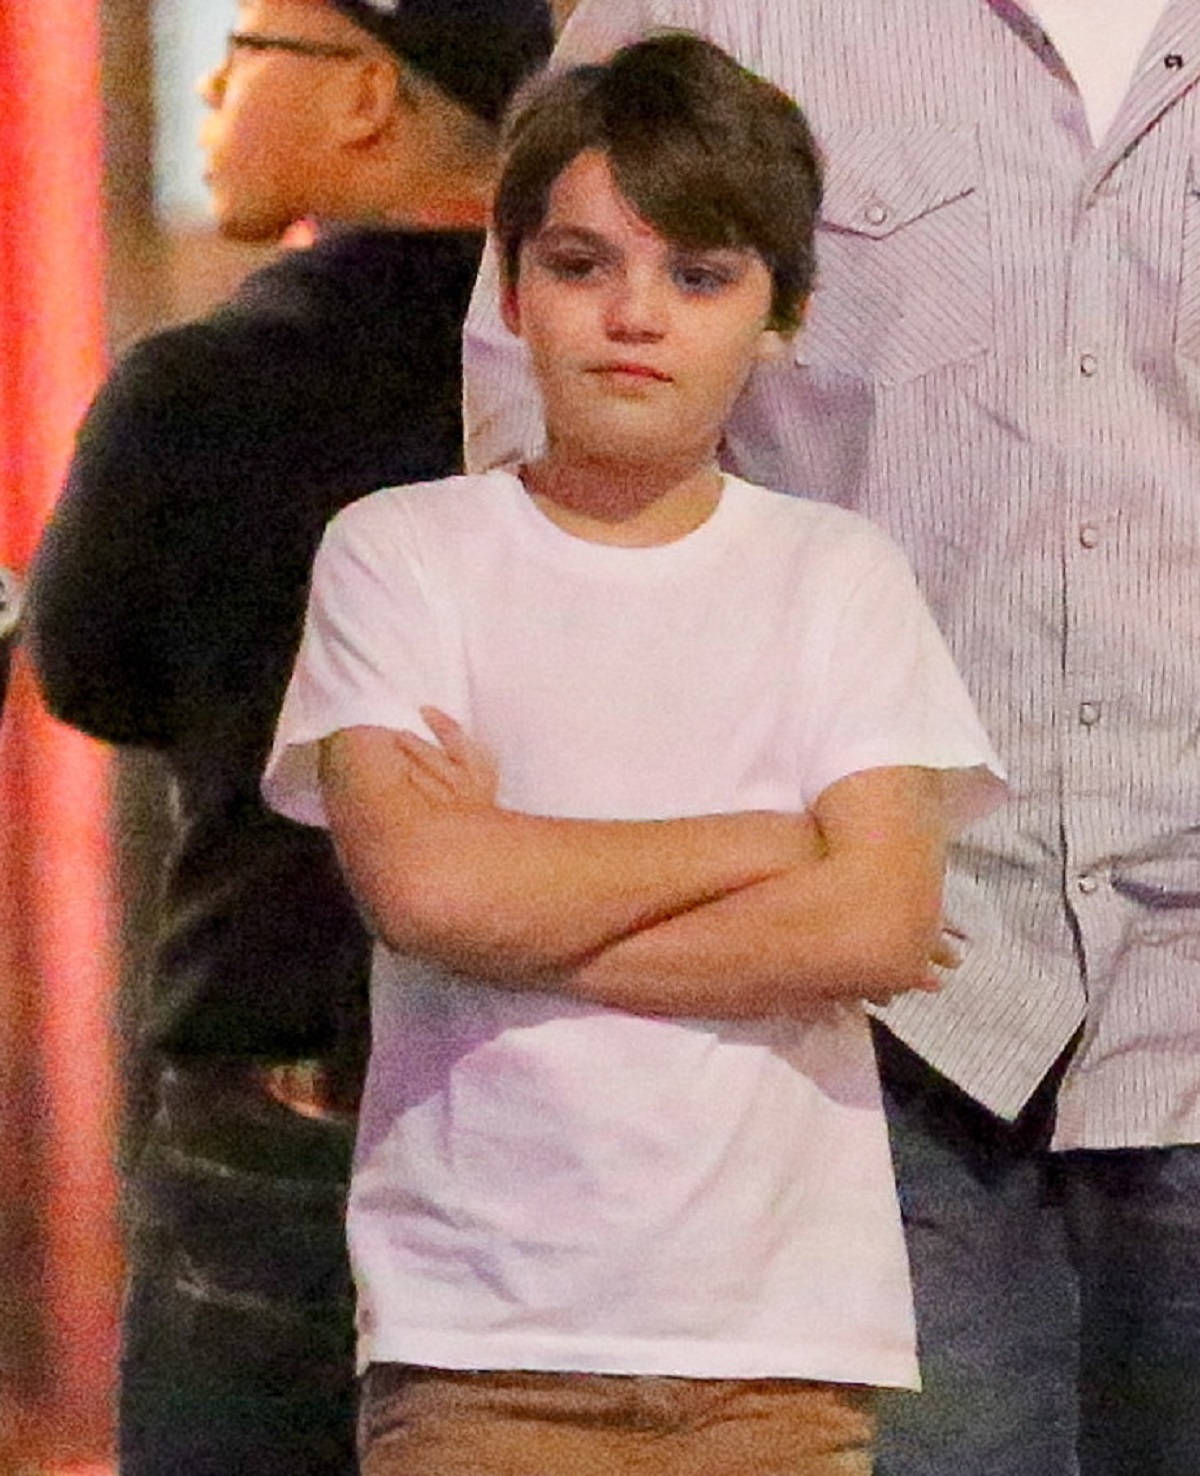 John Jack Depp în copilărie în timp ce poartă un tricou alb